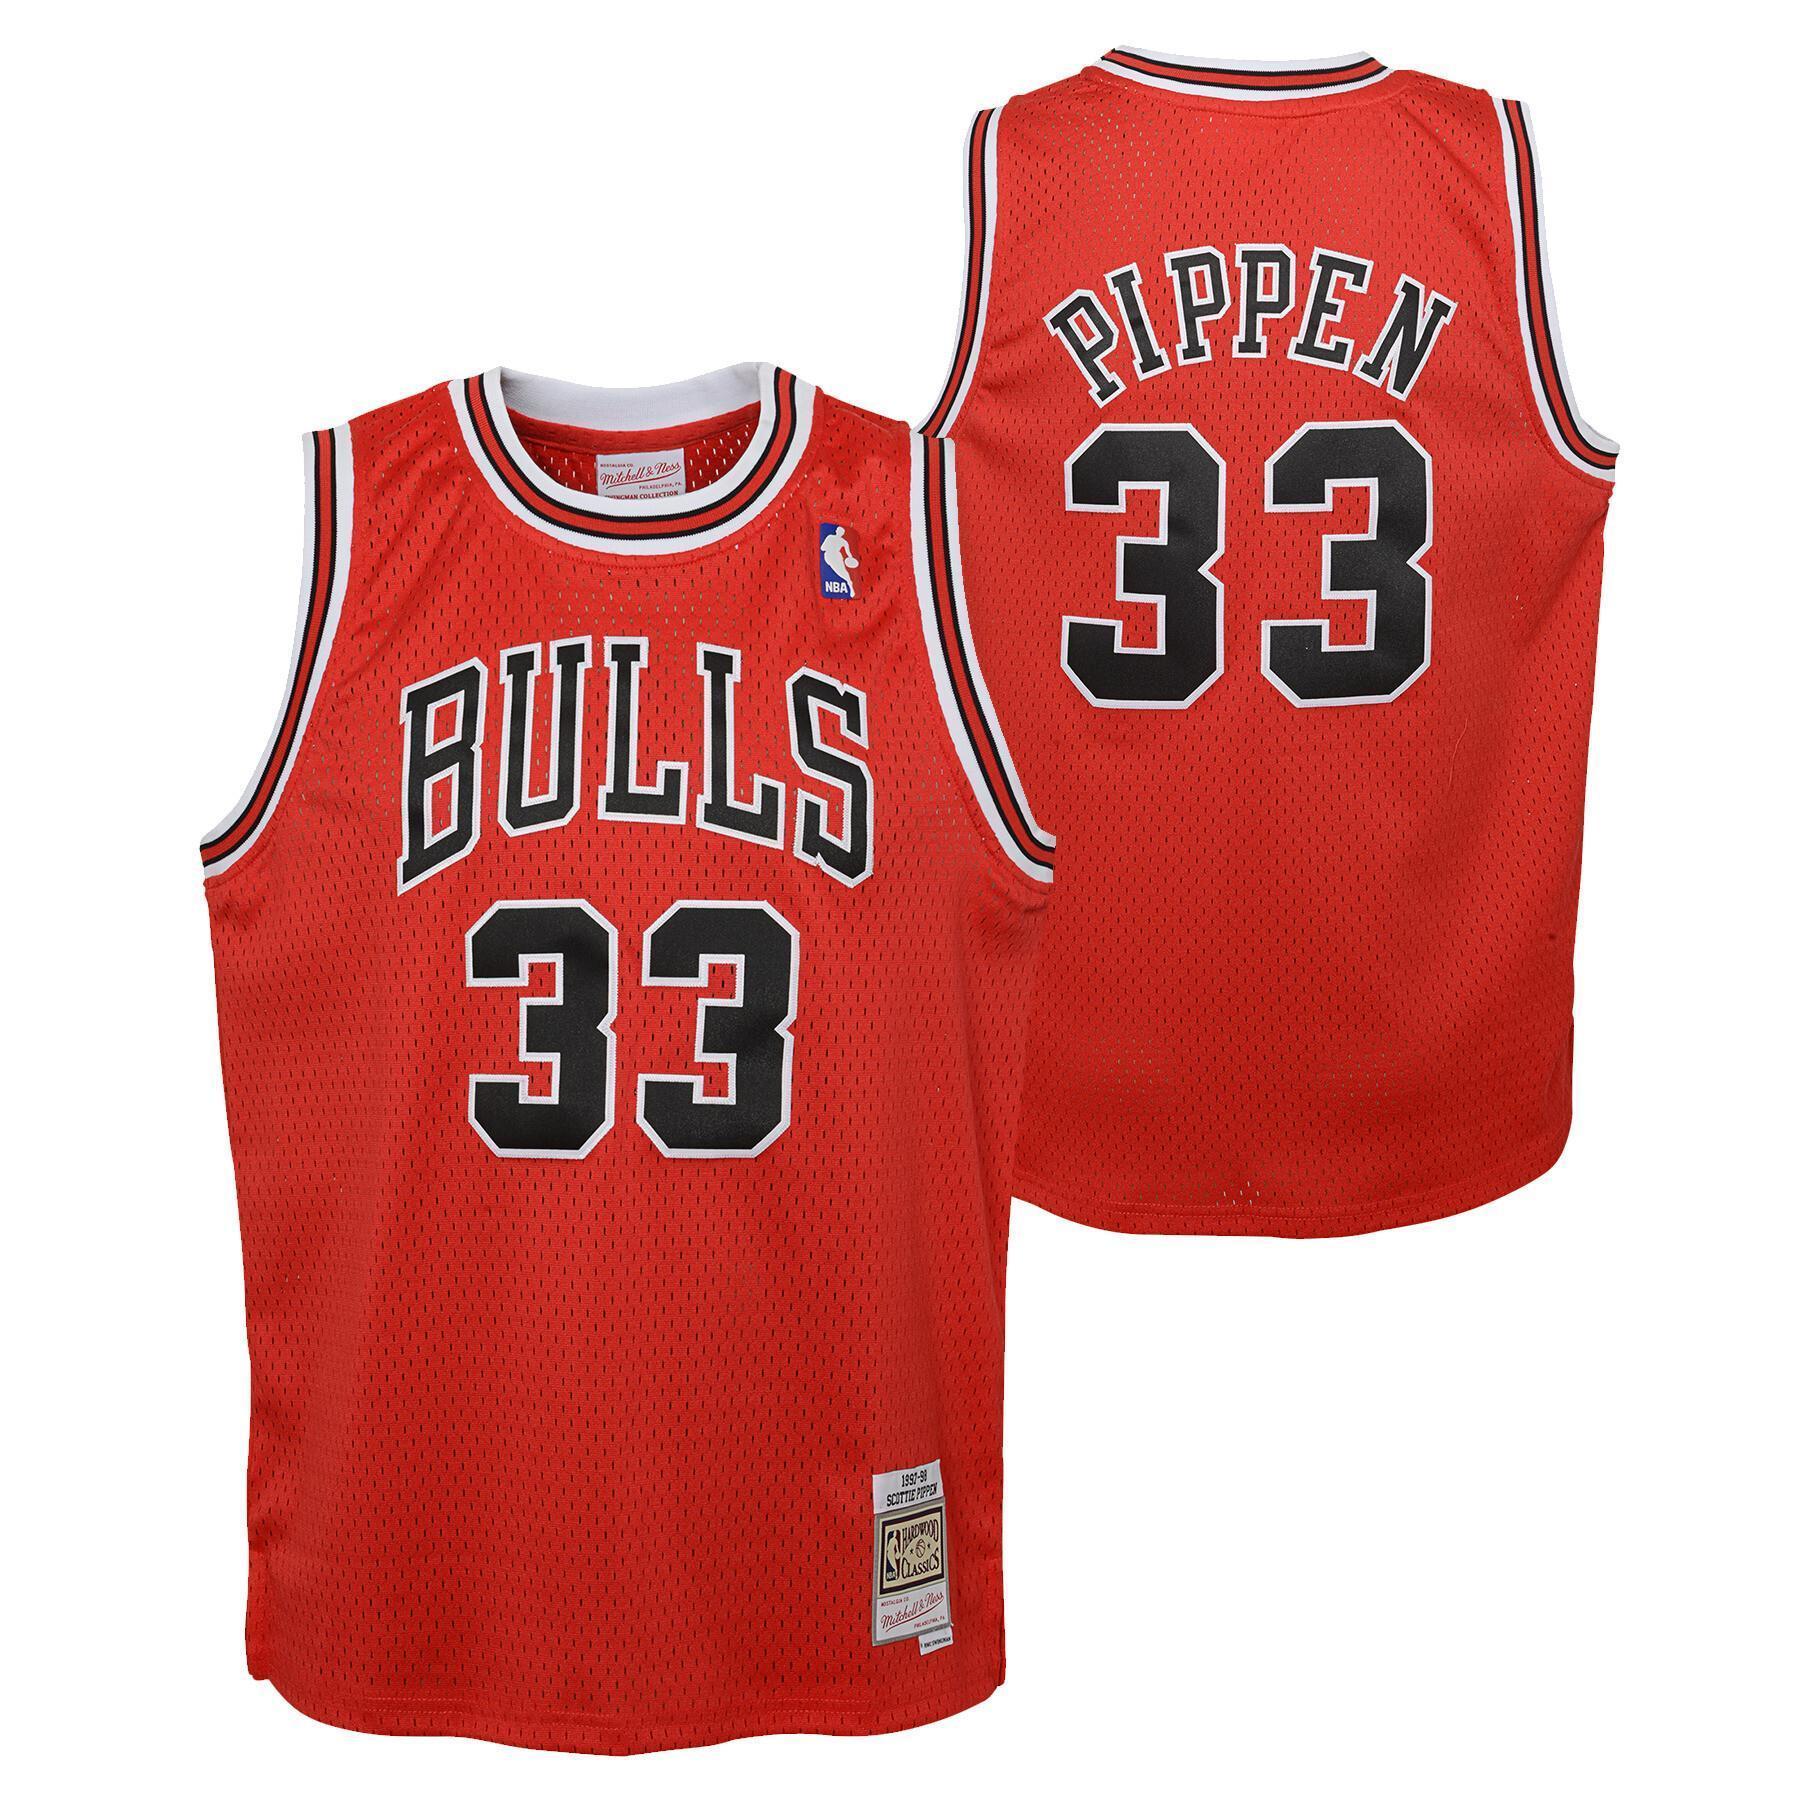 Camisola para crianças Chicago Bulls Swingman Road - Pippen Scottie 1997